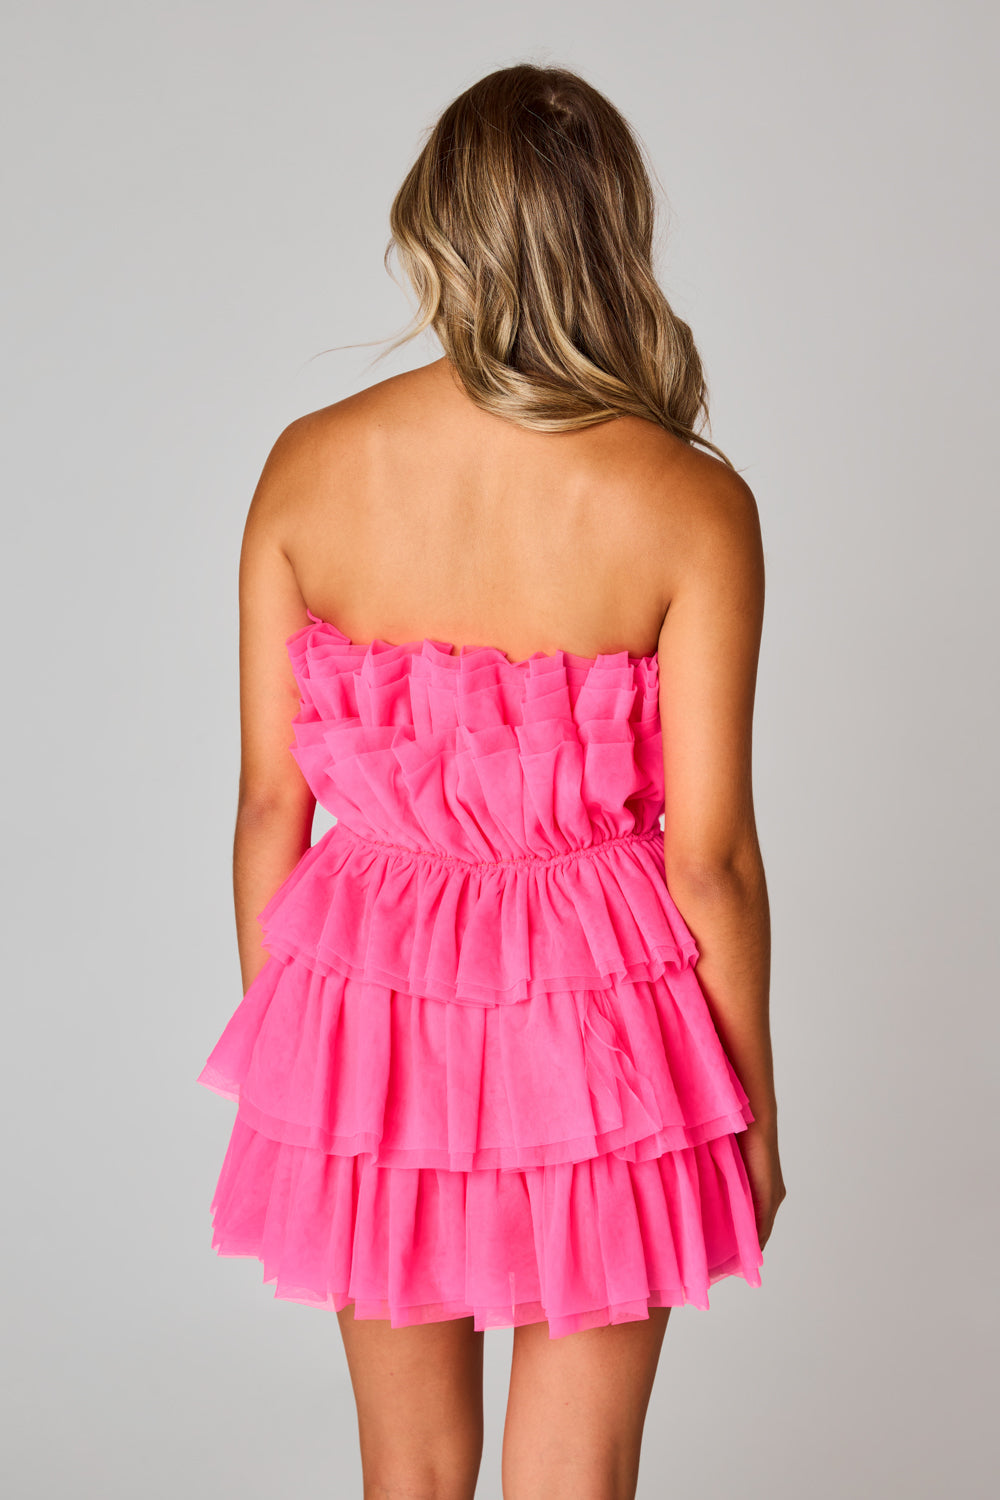 Beauty Queen Dress - Pink